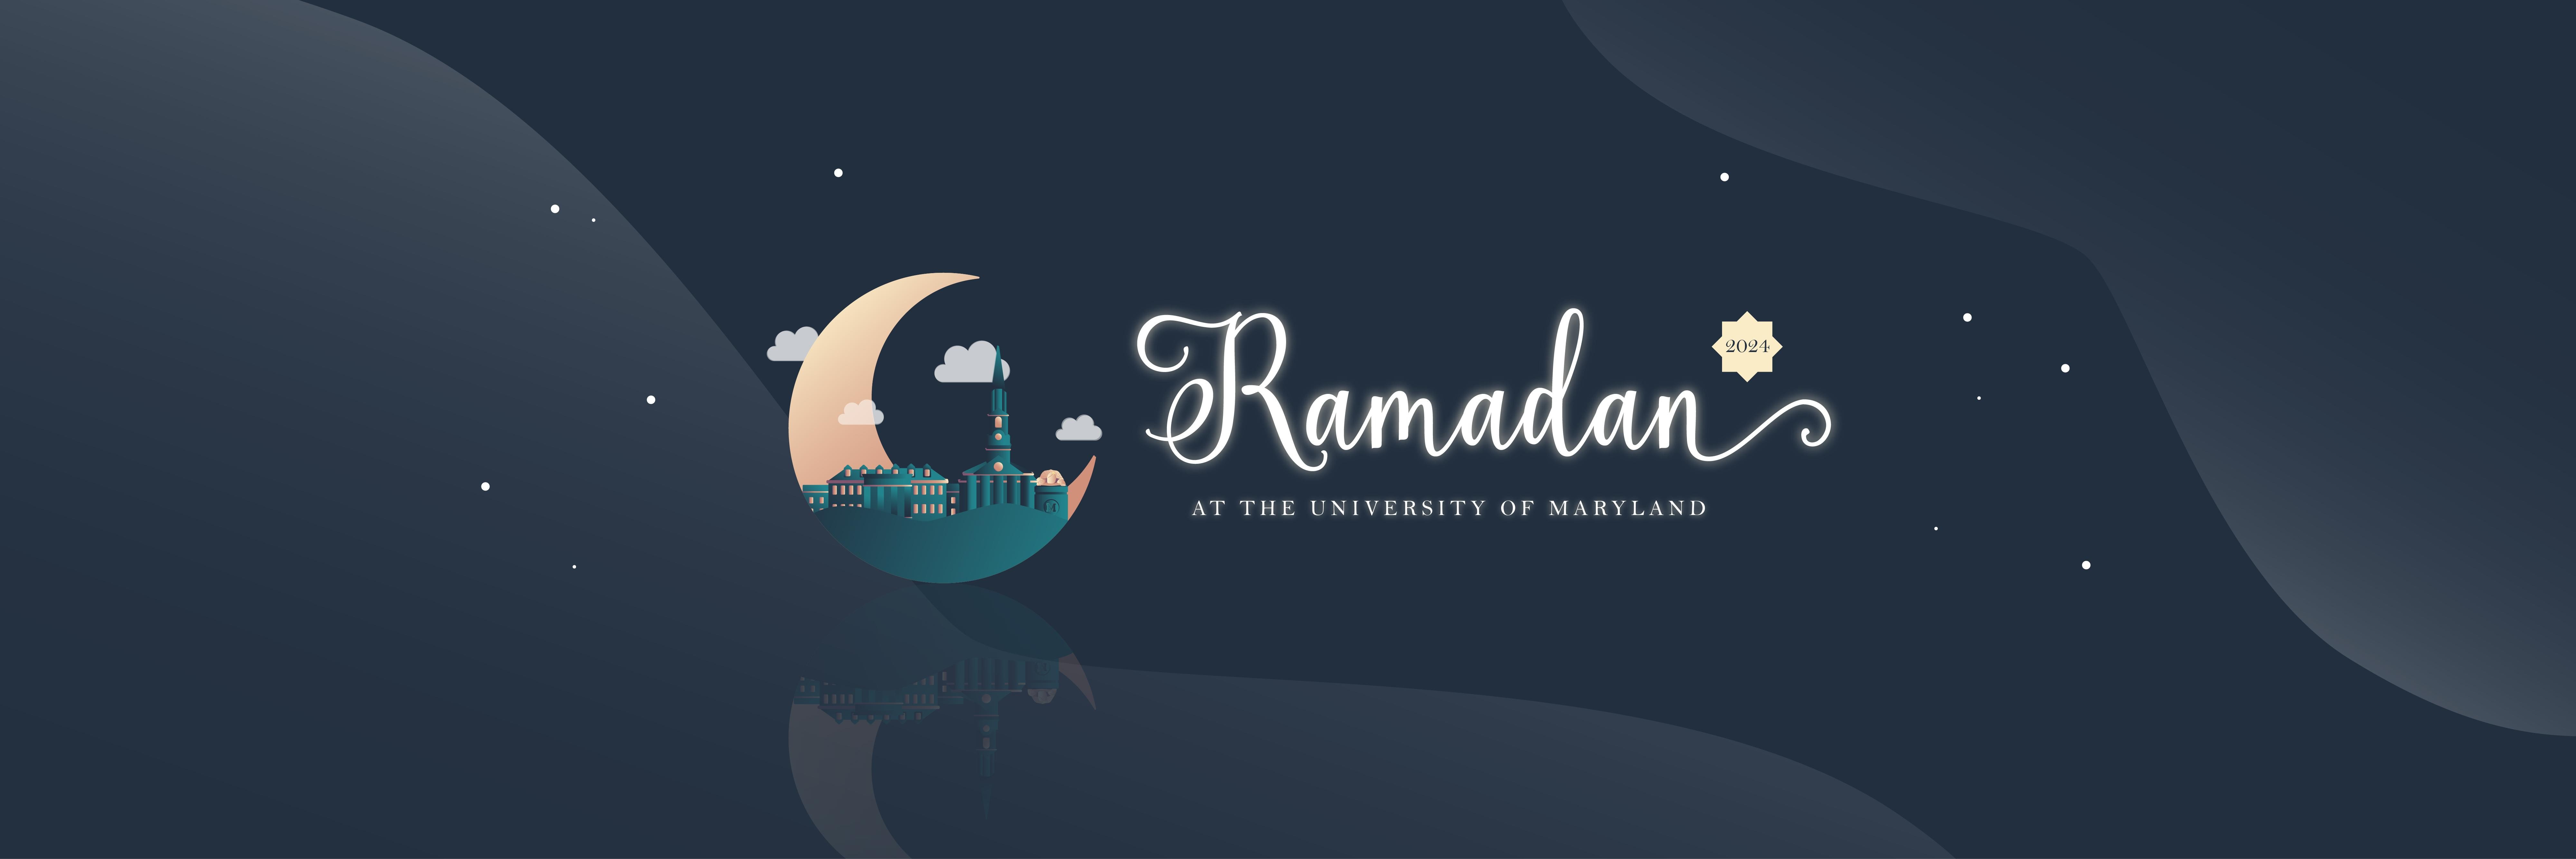 Ramadan at Maryland